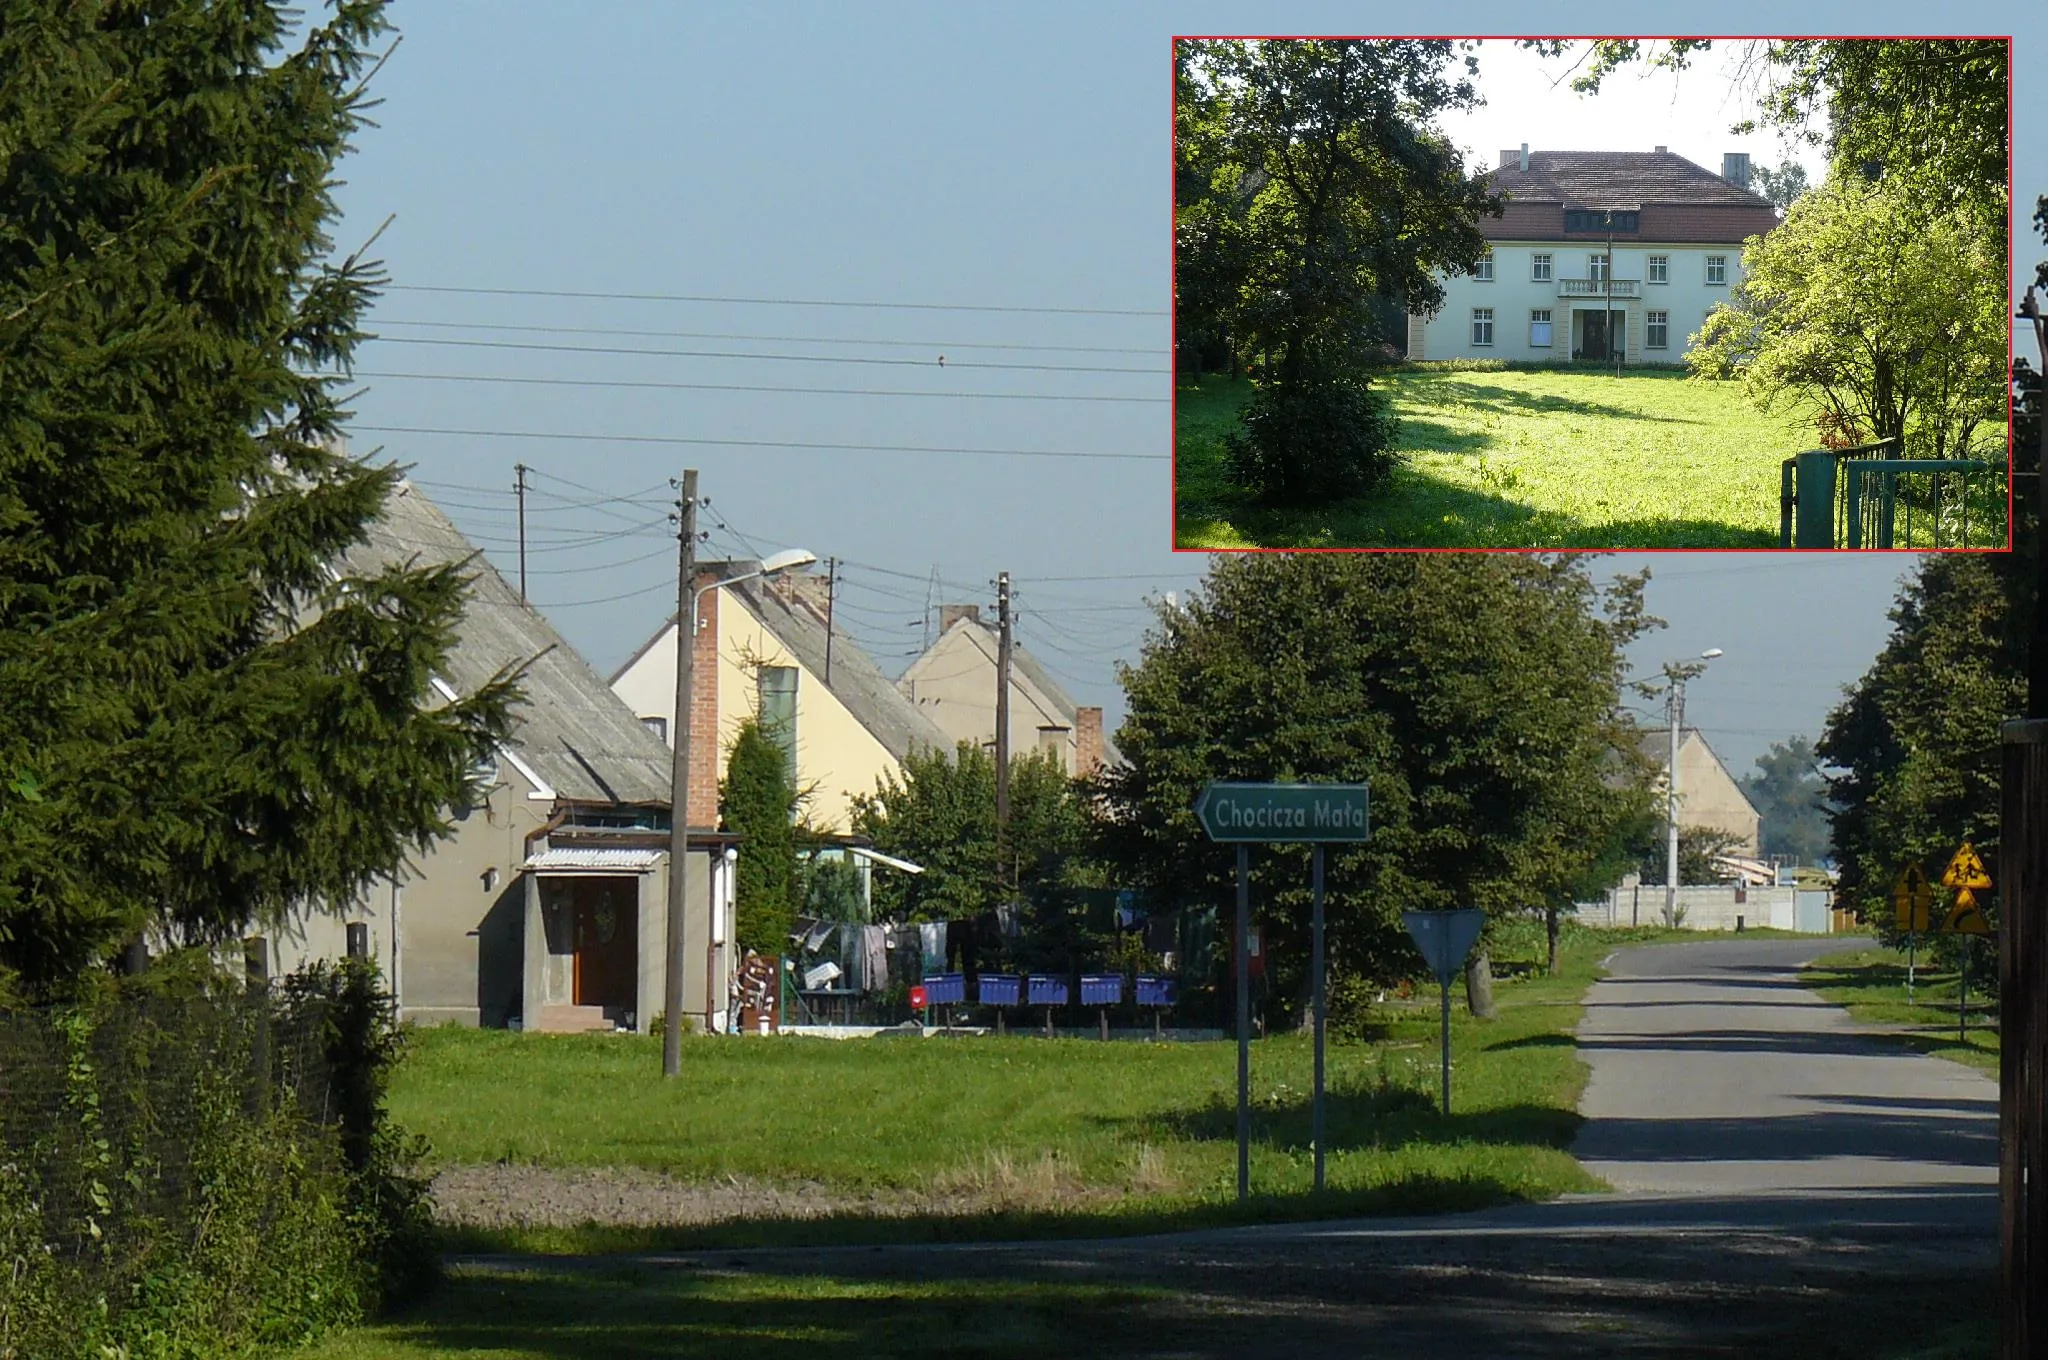 Photo showing: Chocicza Wielka (Wrzesnia).